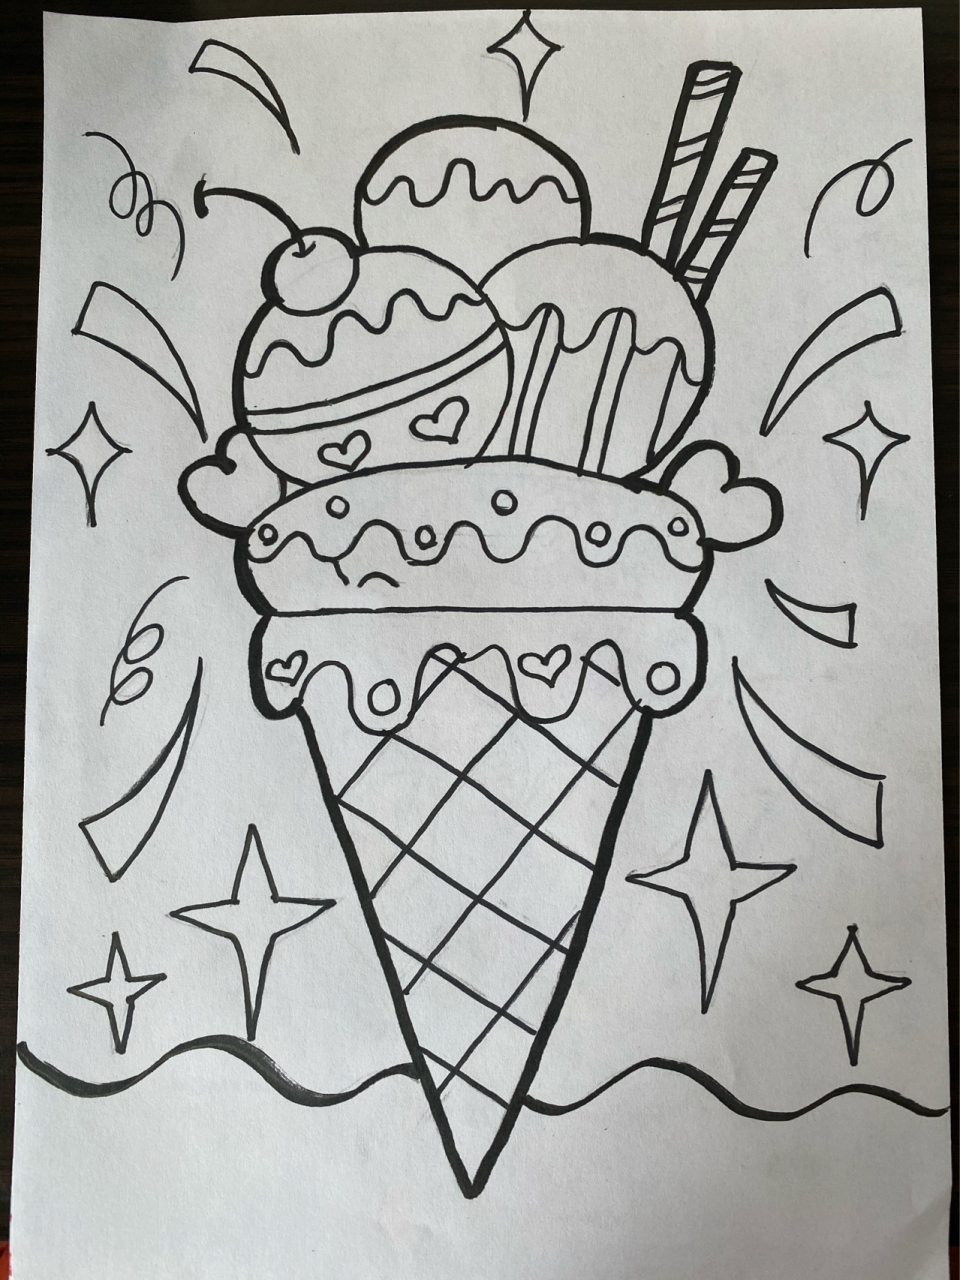 儿童画《美味冰淇淋》 夏天快到了   快把美味的冰淇淋画起来吧 90